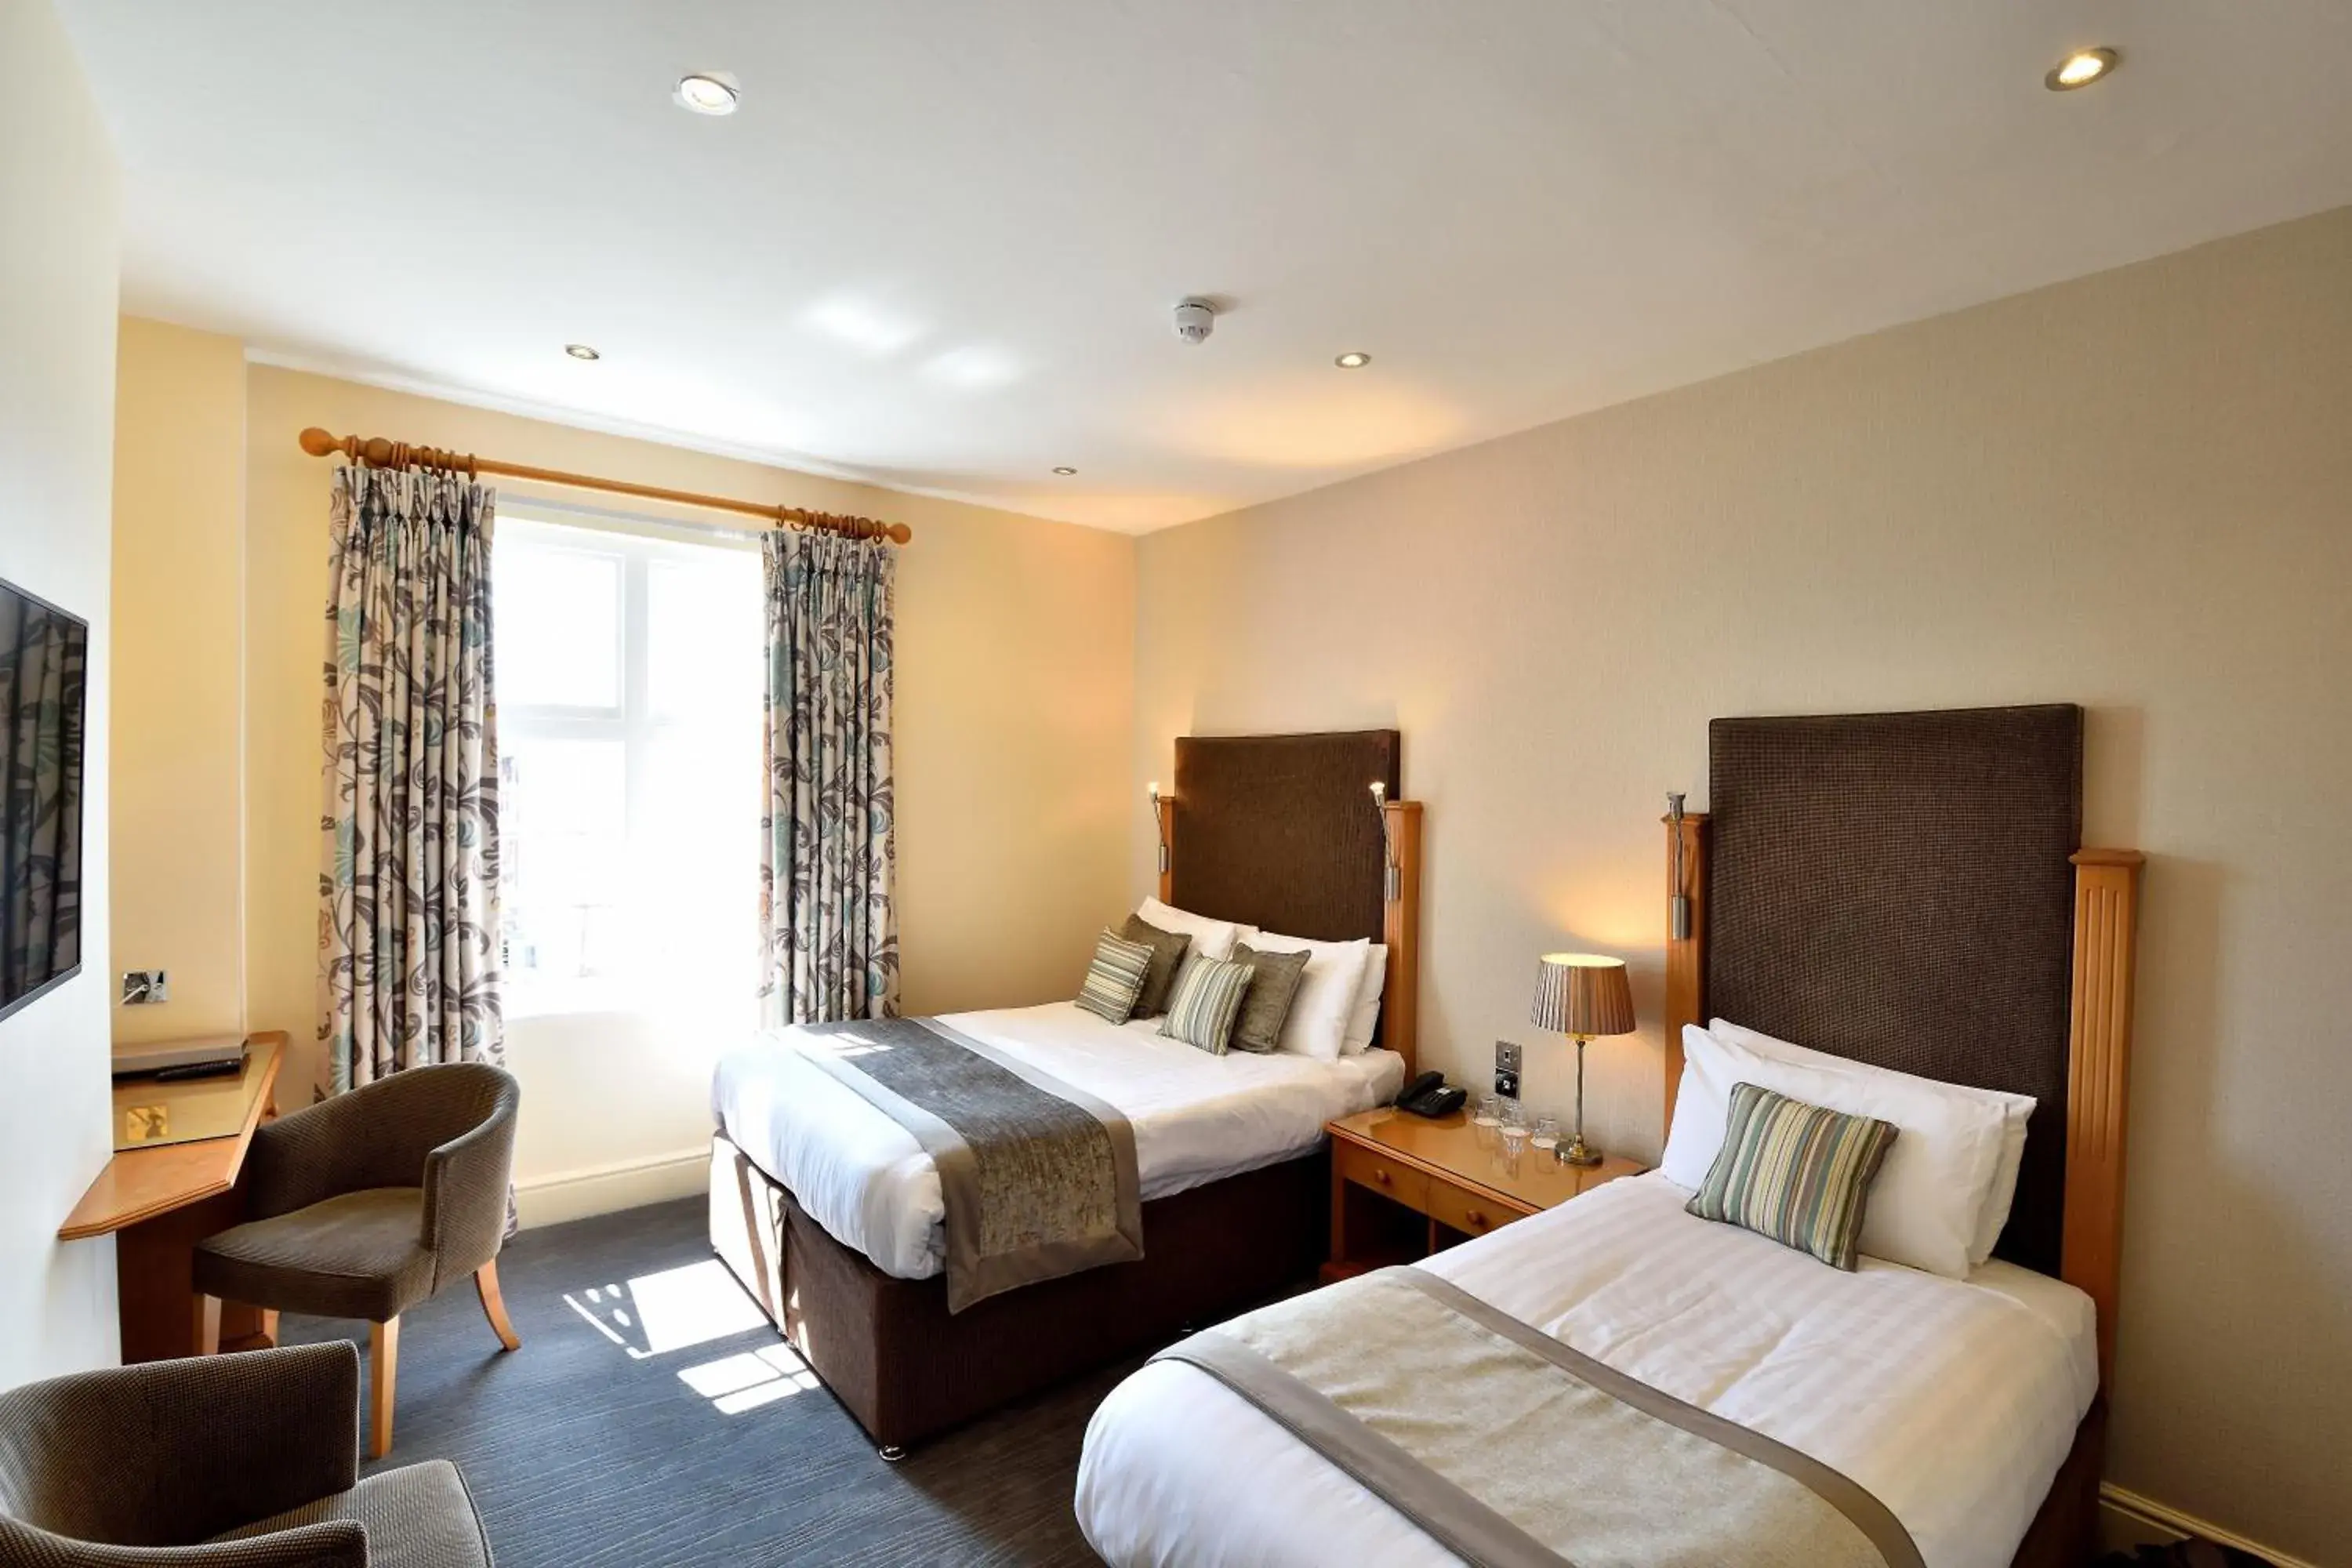 Bed, Room Photo in Queens Court Hotel